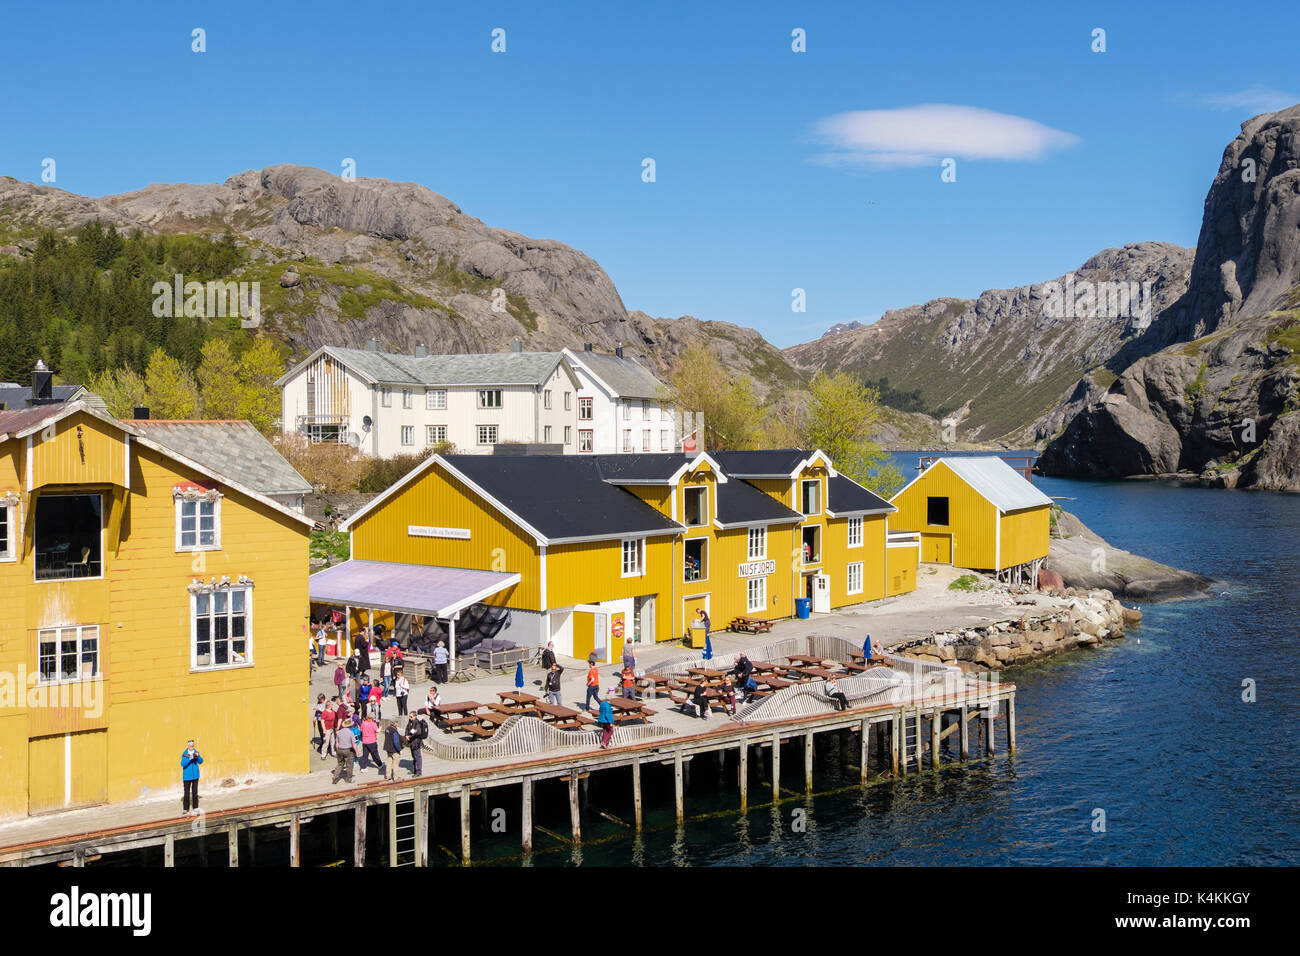 Les bâtiments anciens en bois avec les touristes visitant village de pêcheurs historique de Nusfjord, Flakstadøya Island, îles Lofoten, Nordland, Norvège, Scandinavie Banque D'Images